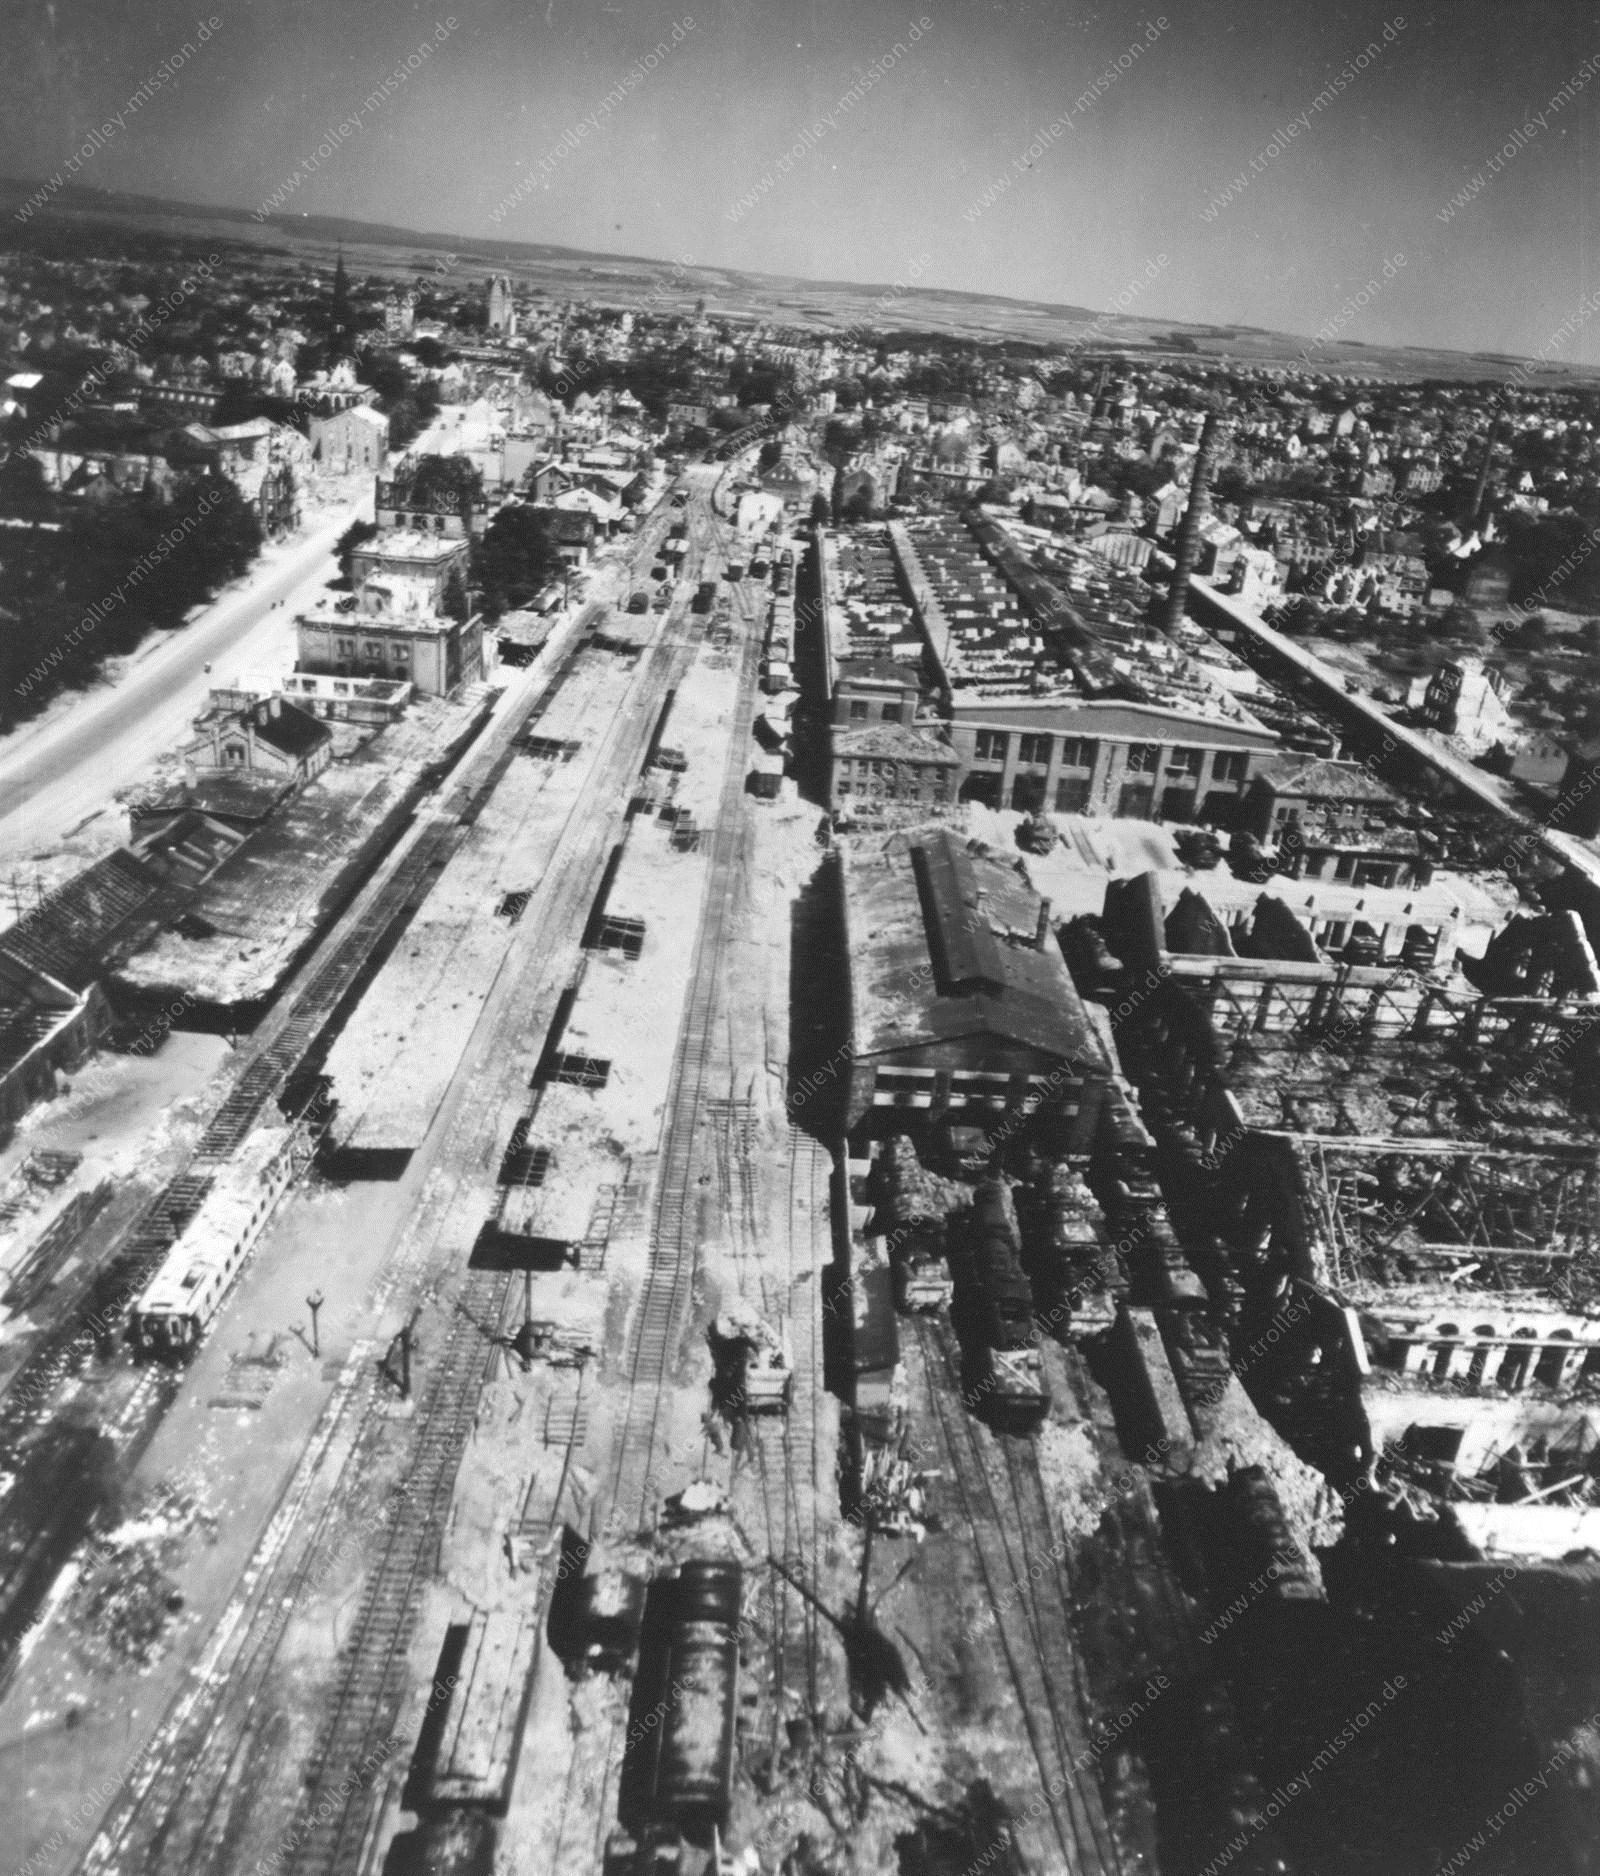 Paderborn Hauptbahnhof 1945 - Luftaufnahme der Benteler-Werke und Bahnsteige des zerstörten Bahnhofes